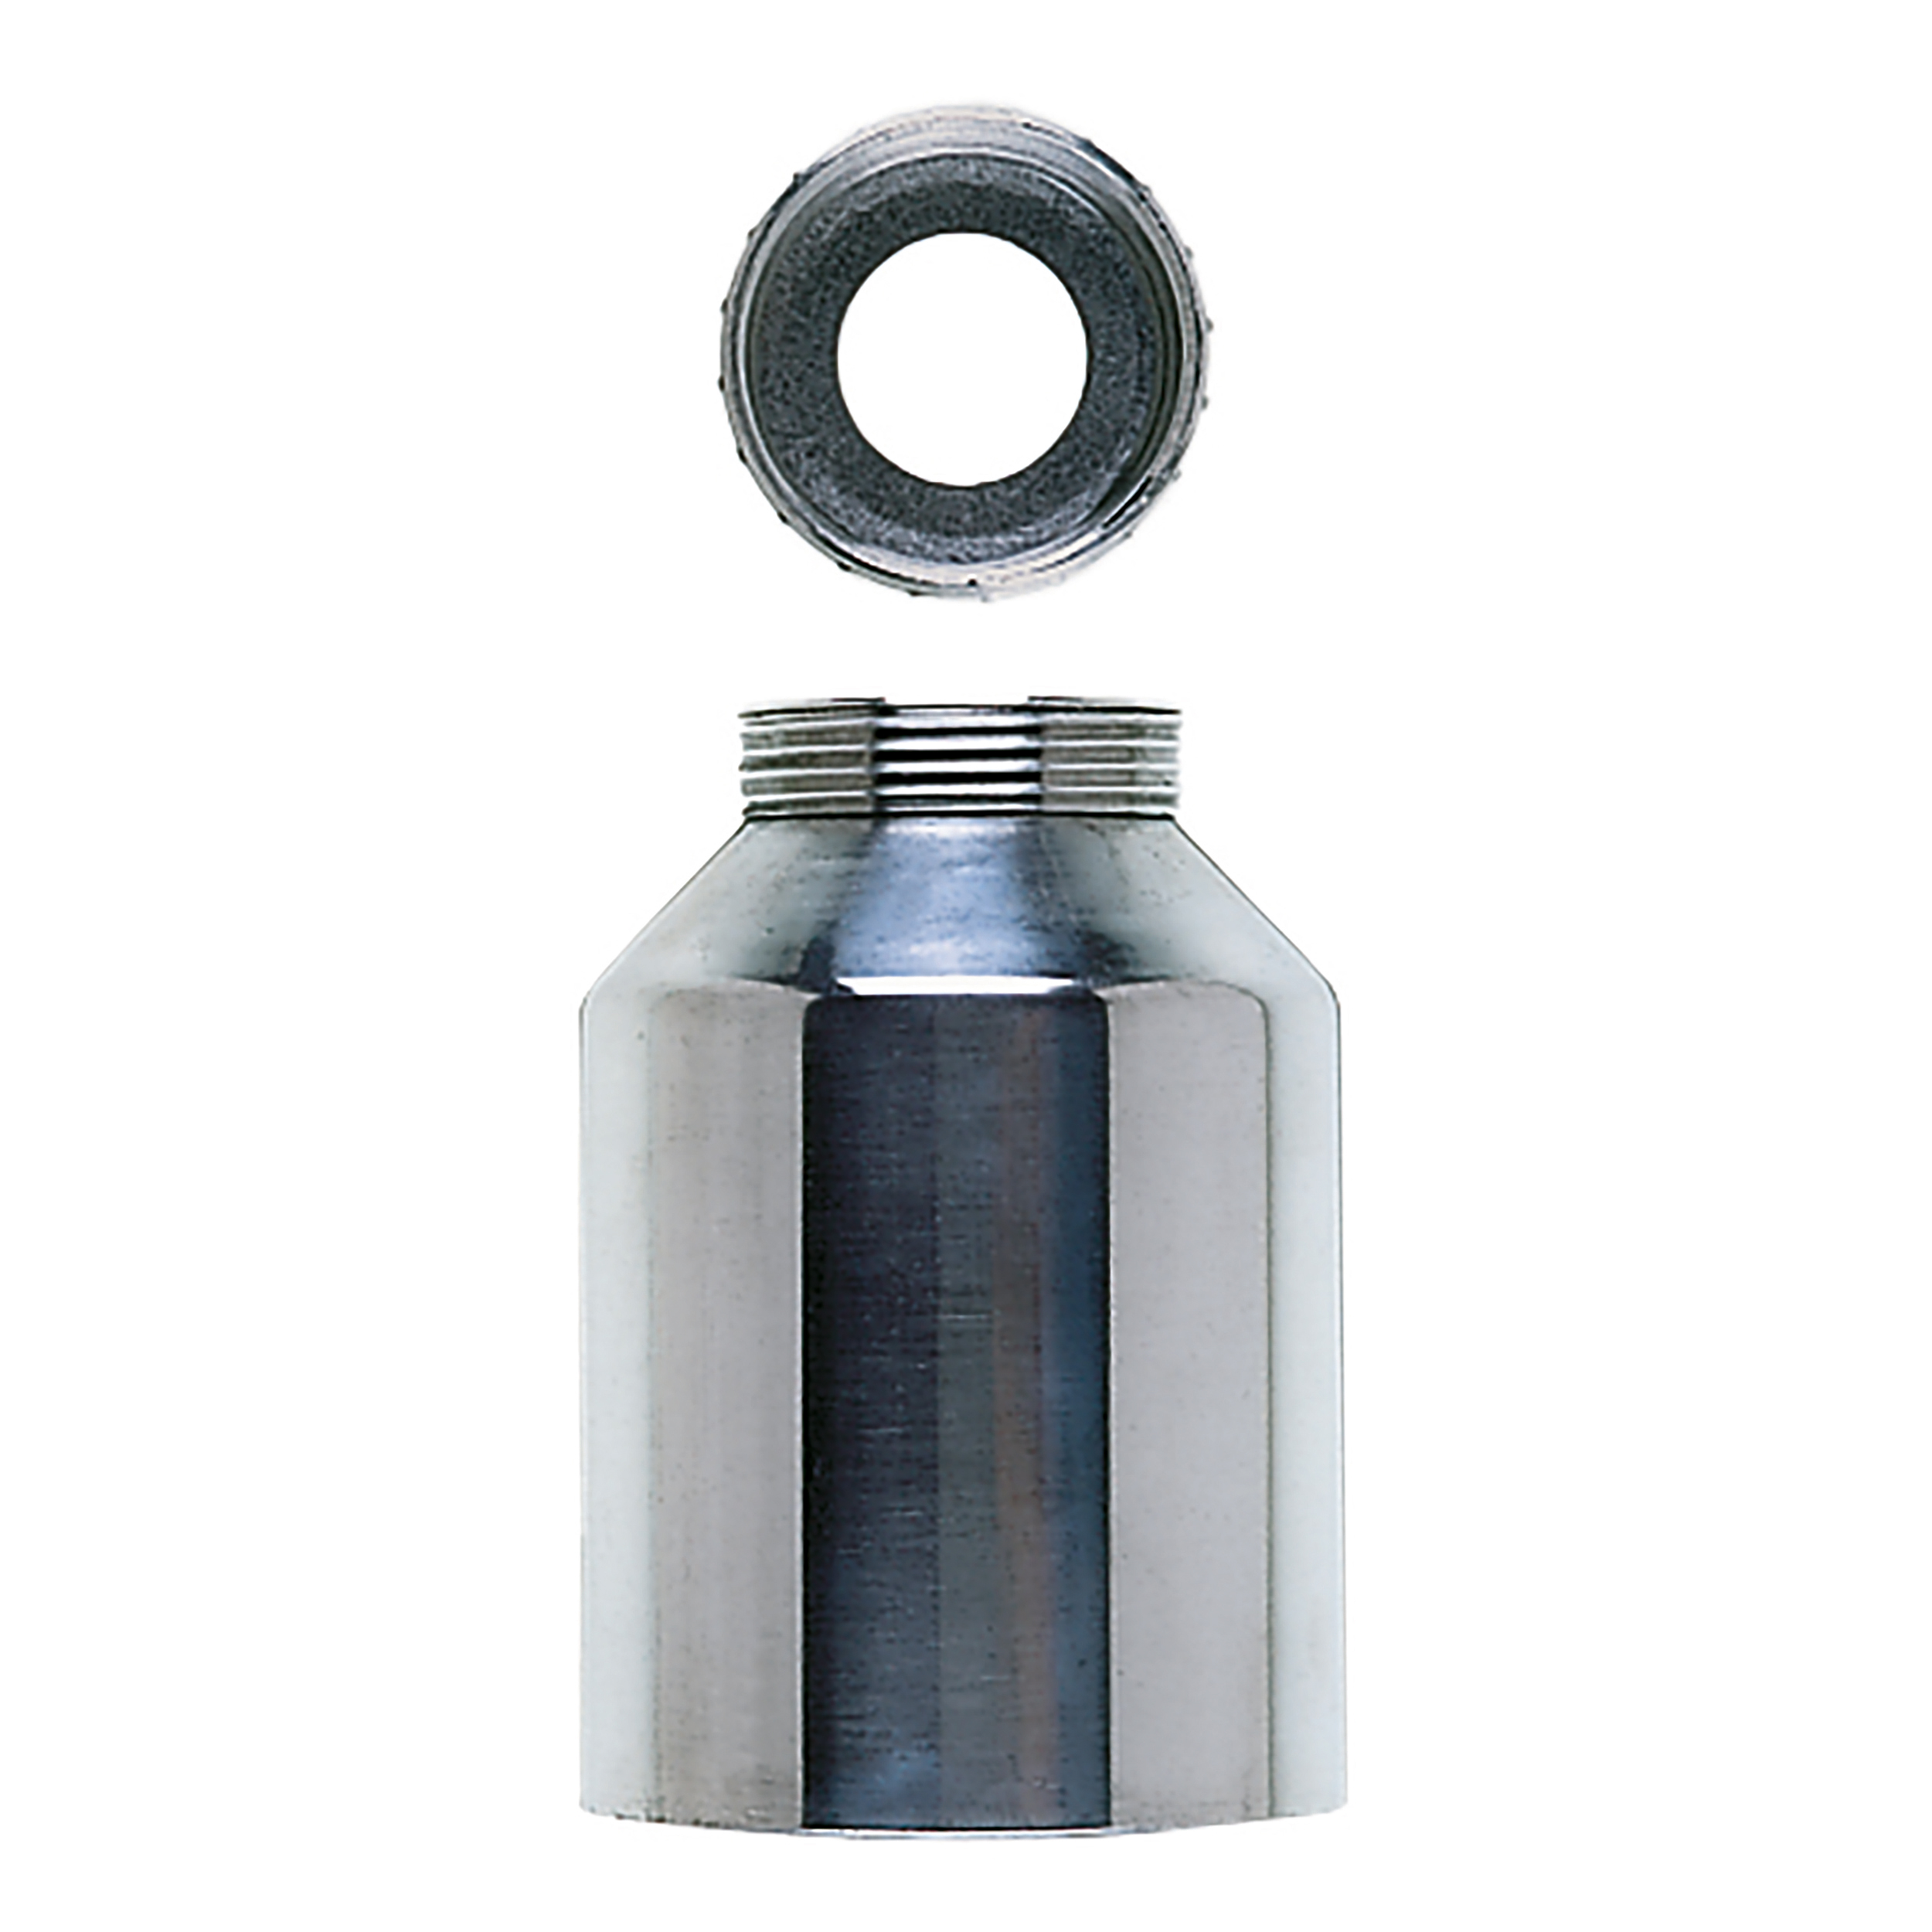 Metallbehälter für Sprühpistolen: Becher und Deckel, komplett, Füllmenge: 0,7 l, Material: Aluminium/Stahl